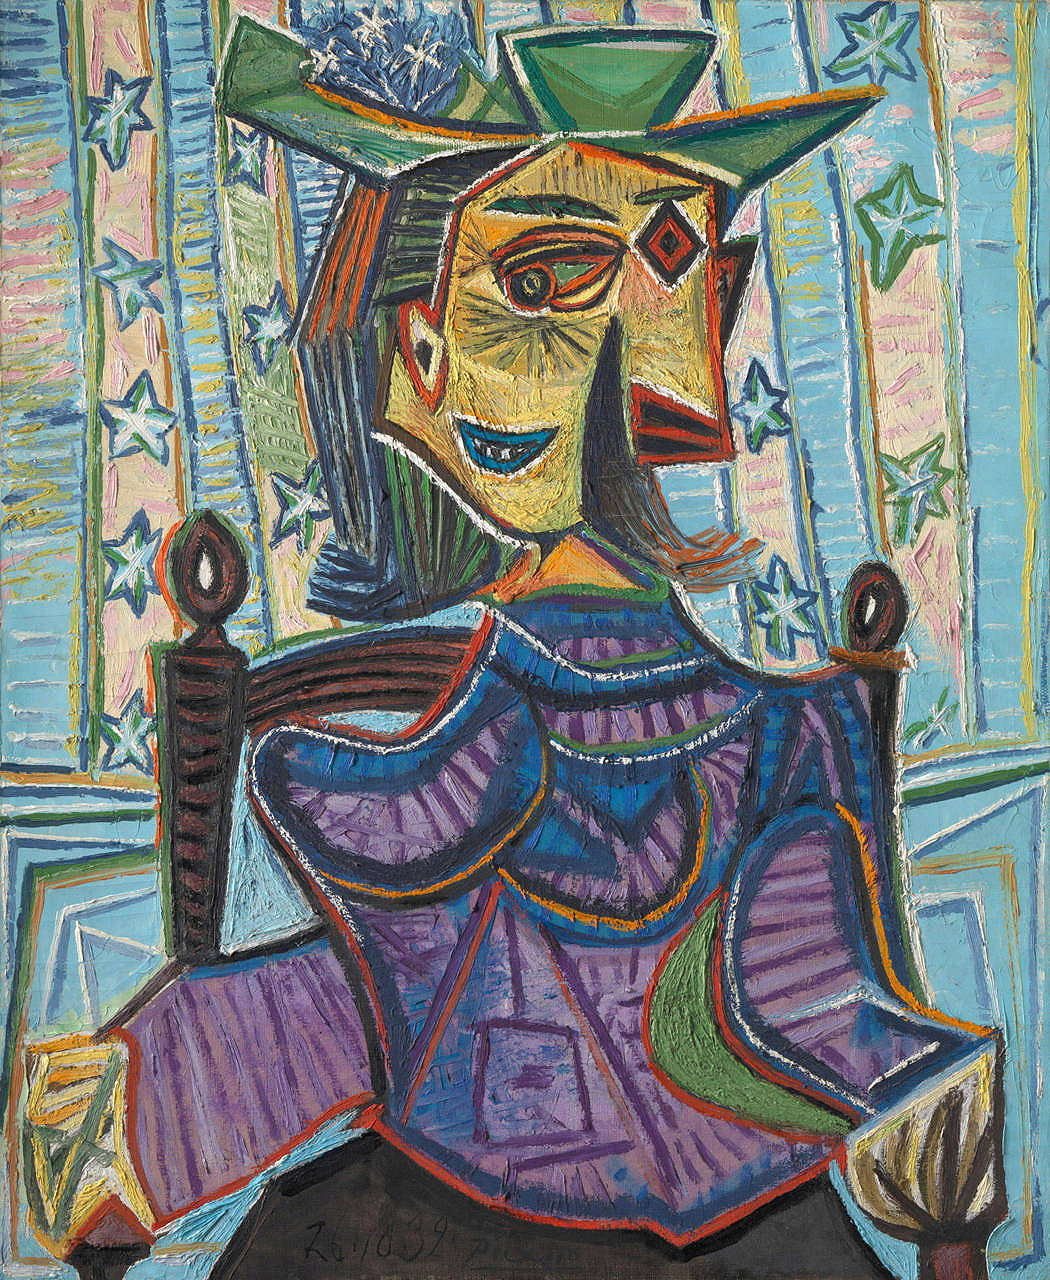 坐在椅子上的朵拉·玛尔 by 巴勃罗 毕加索 - 1939 - 73.3 x 60.3 cm 